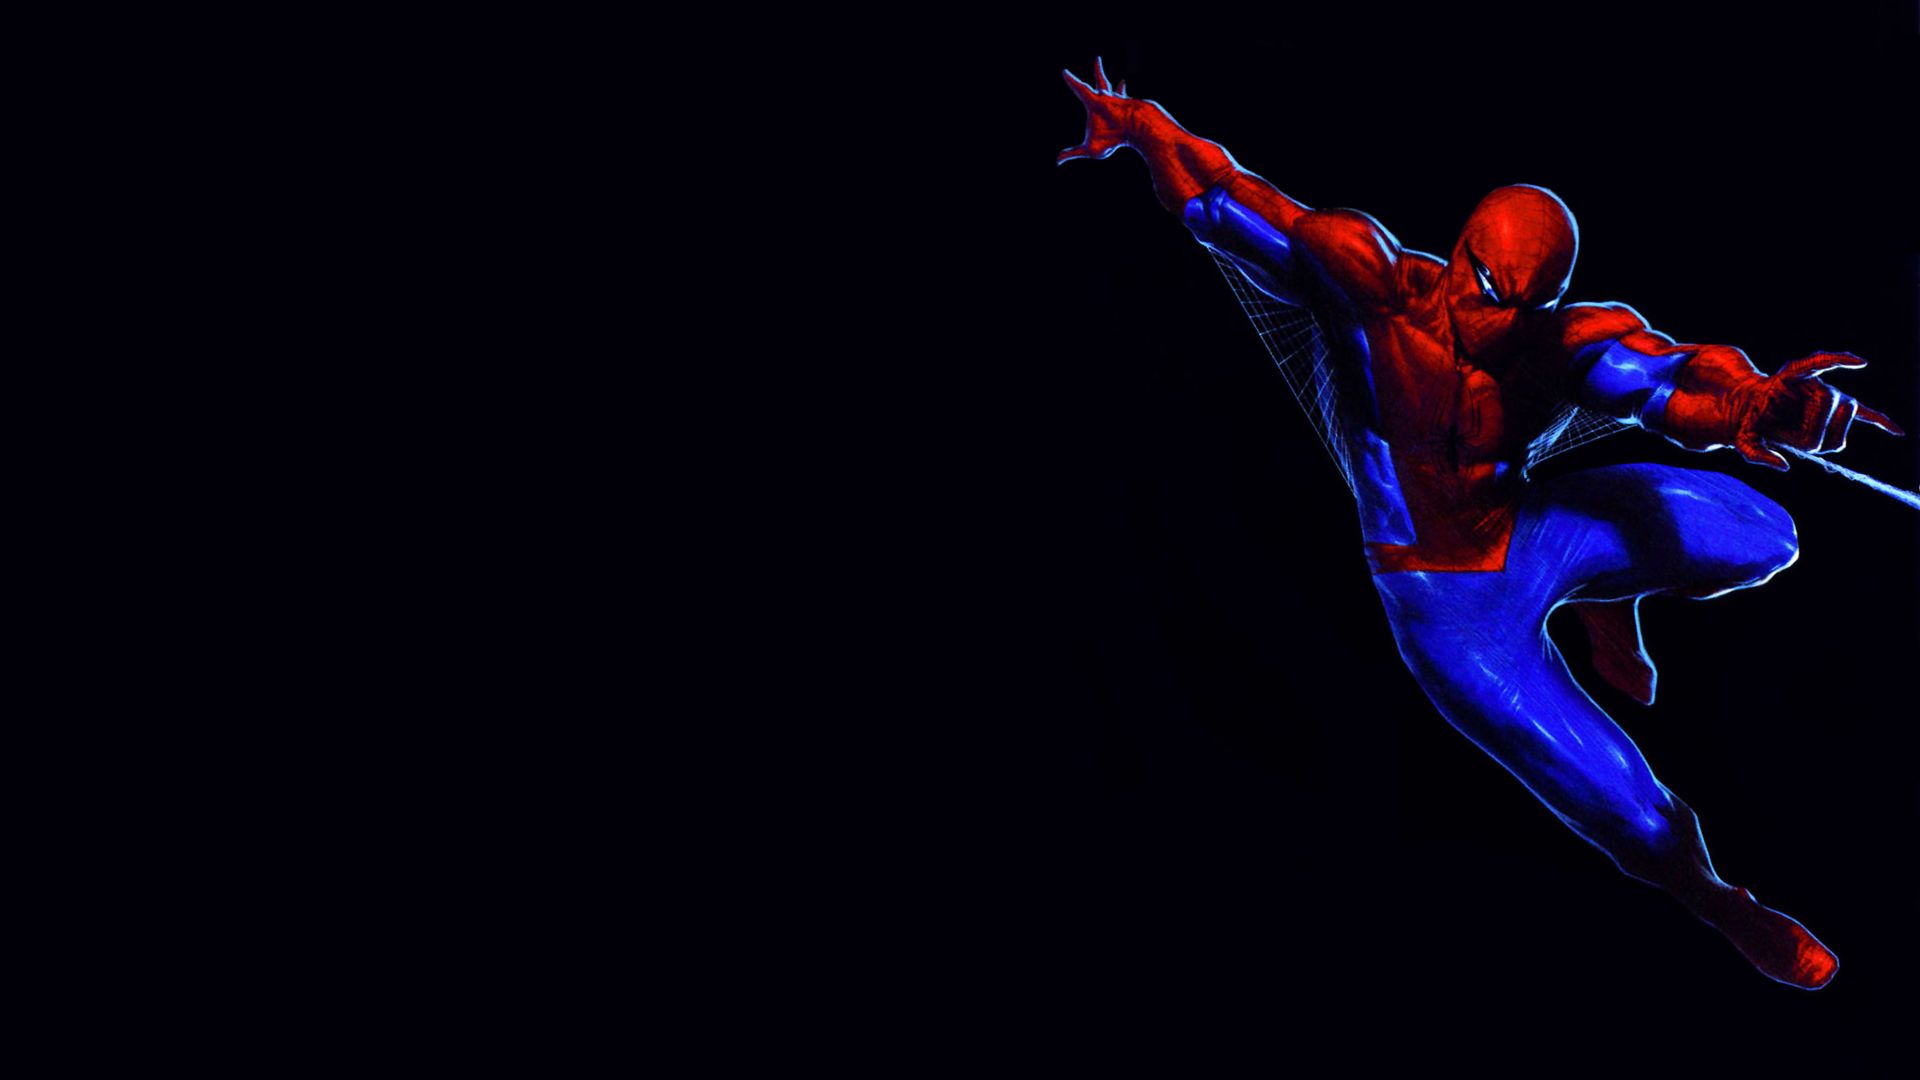 Spider Man HD Wallpaper | 1920x1080 | ID:18509